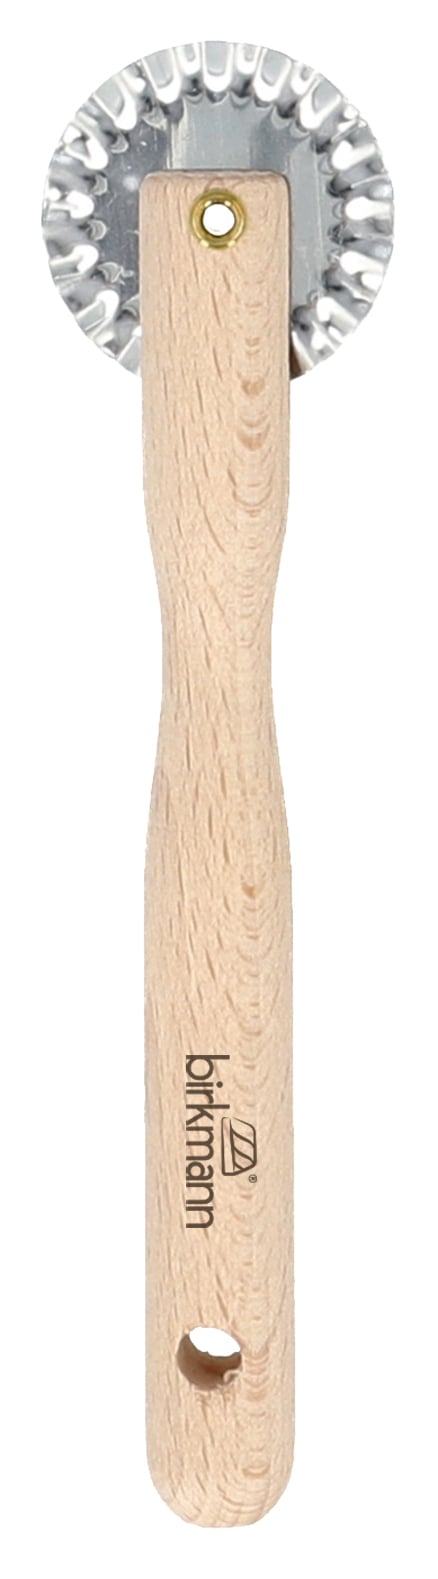 Teigrädchen, Birkmann, 15cm aus Holz-BIR-889453